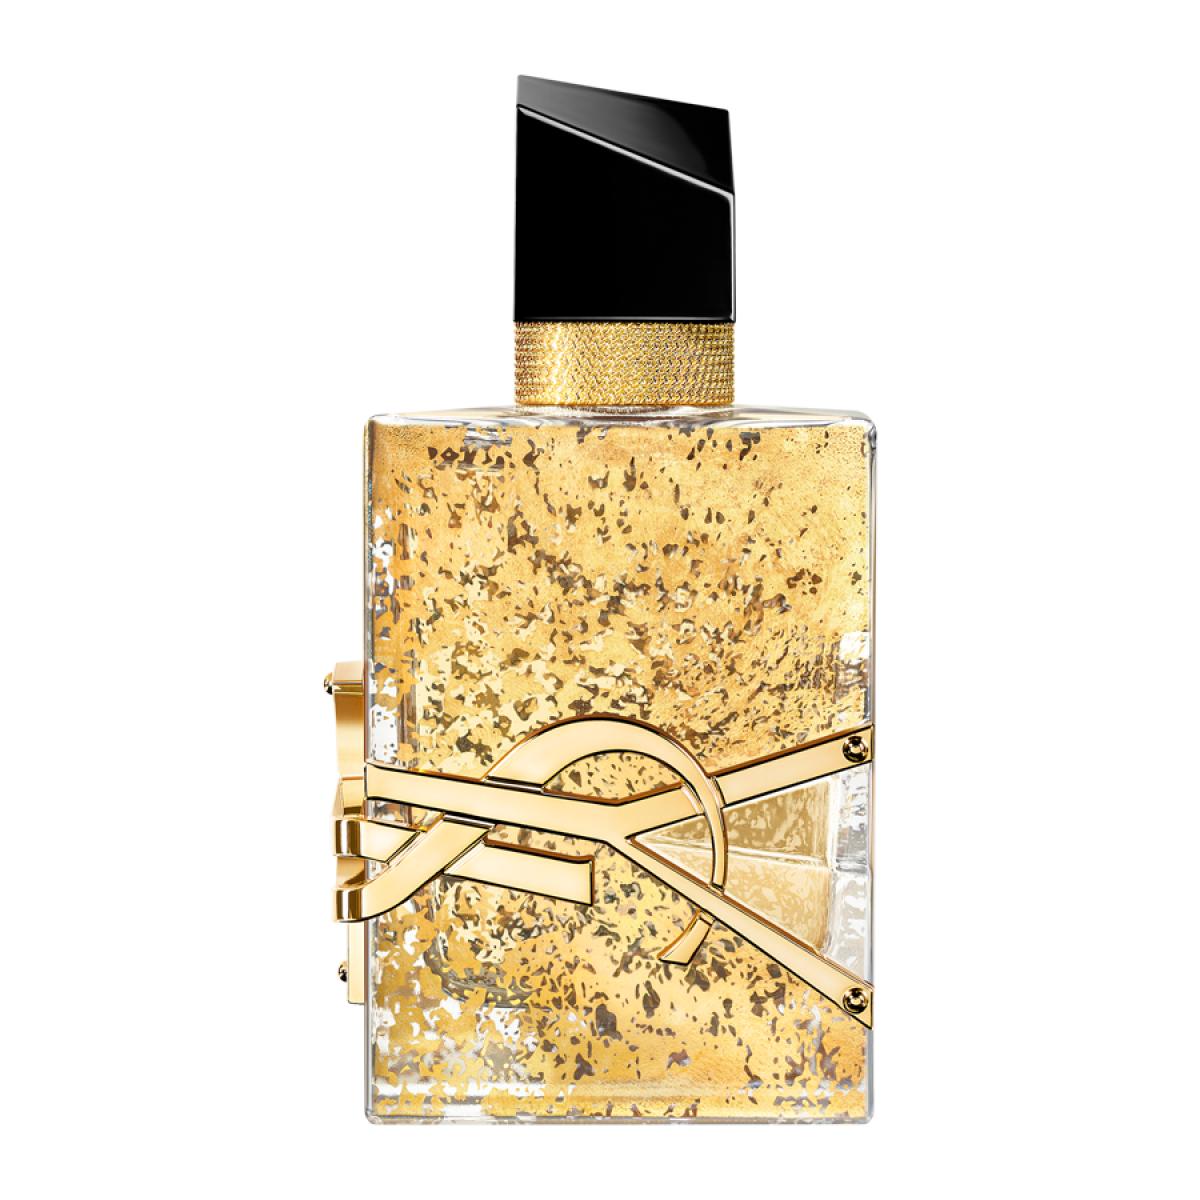 Eau de Parfum Libre de Yves Saint Laurent 